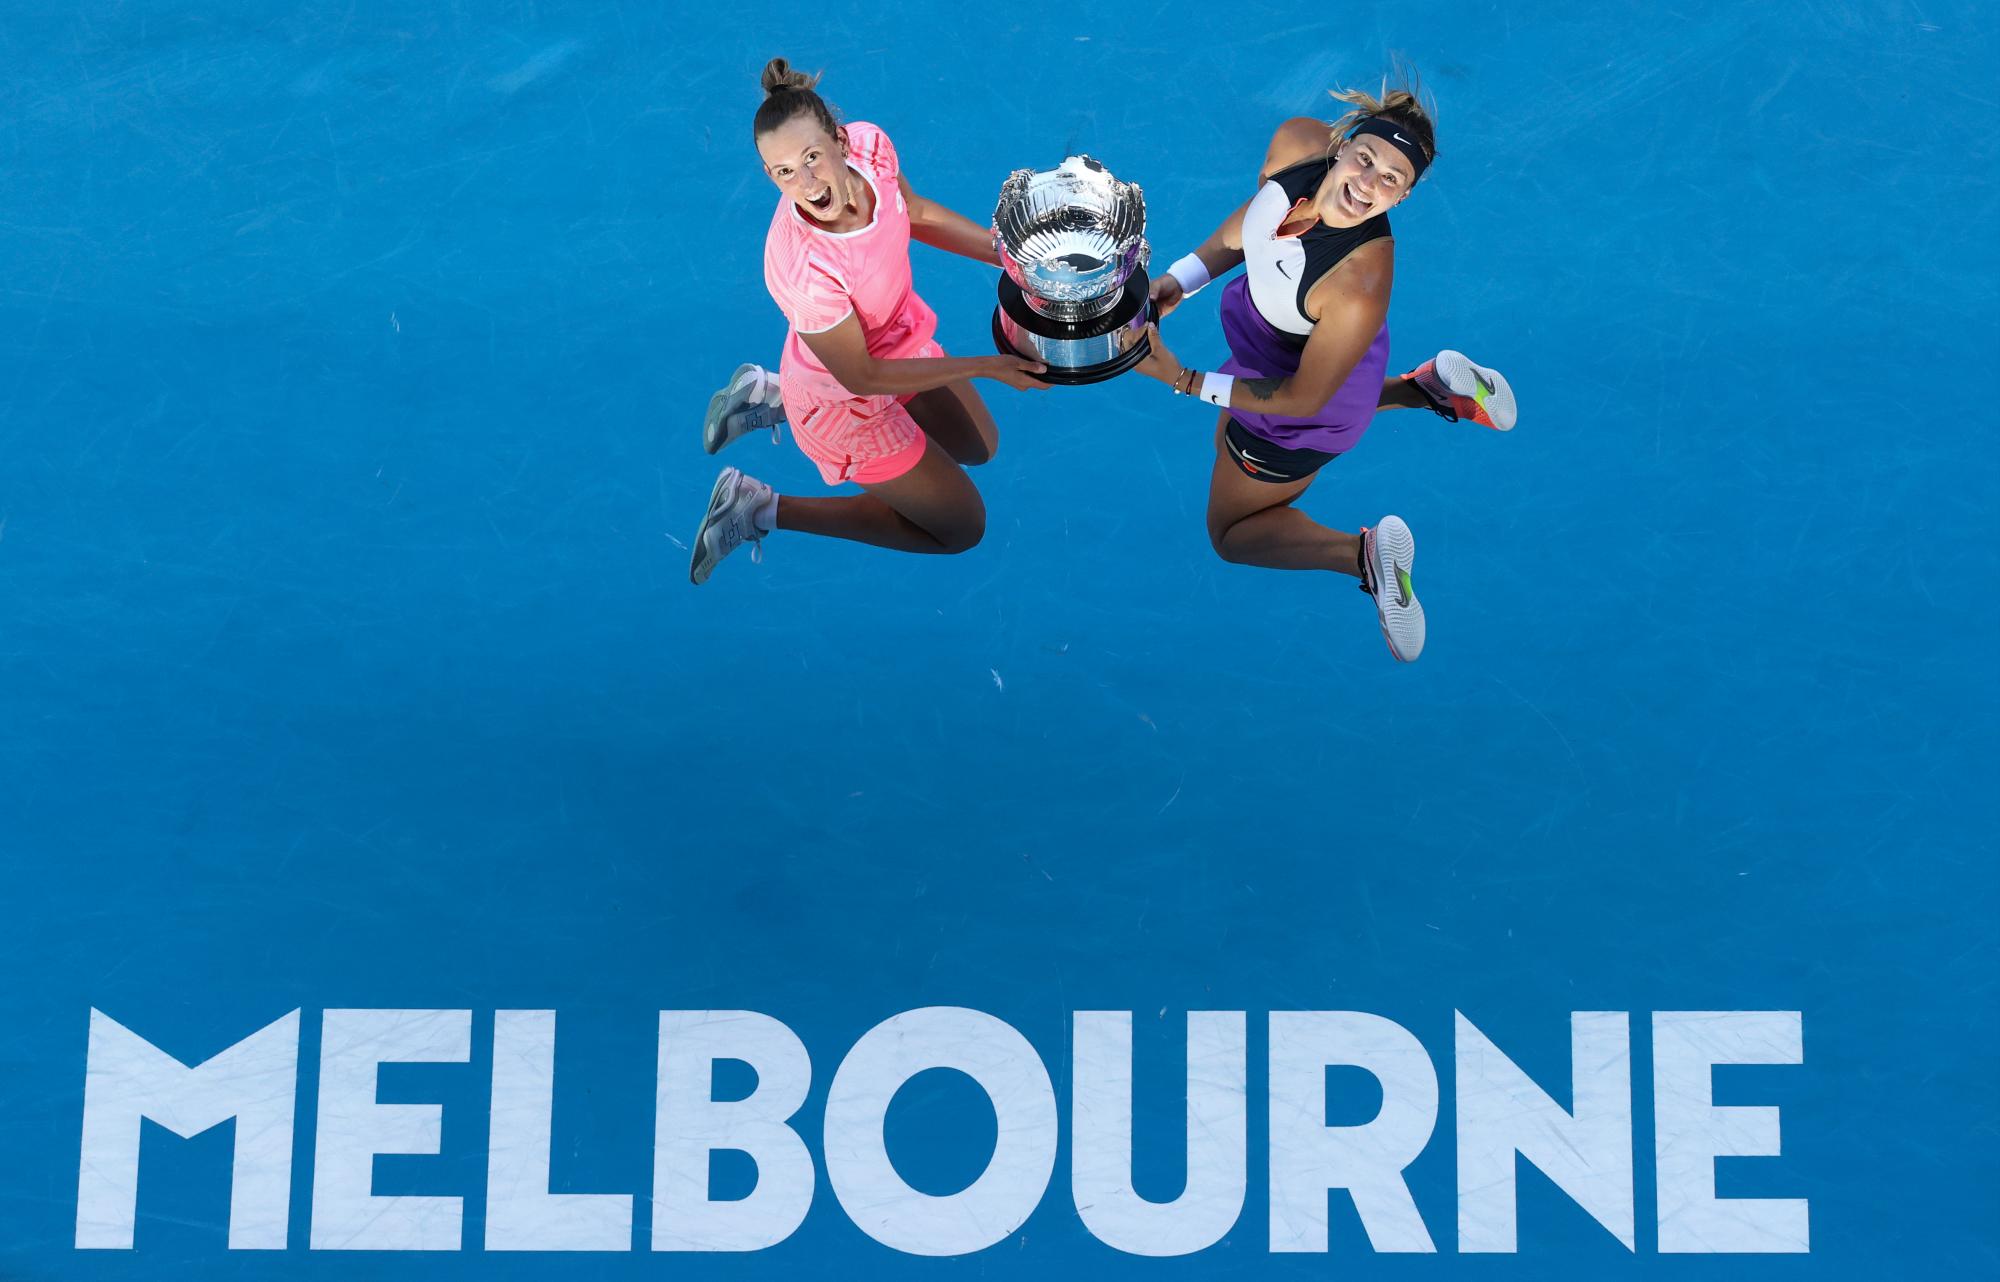 La belga Elise Mertens, izquierda, y Aryna Sabalenka de Bielorrusia celebran con su trofeo después de derrotar a Barbora Krejcikova y Katerina Siniakova de la República Checa en la final de dobles femeninos en el campeonato de tenis del Abierto de Australia en Melbourne, Australia, el viernes 19 de febrero de 2021.